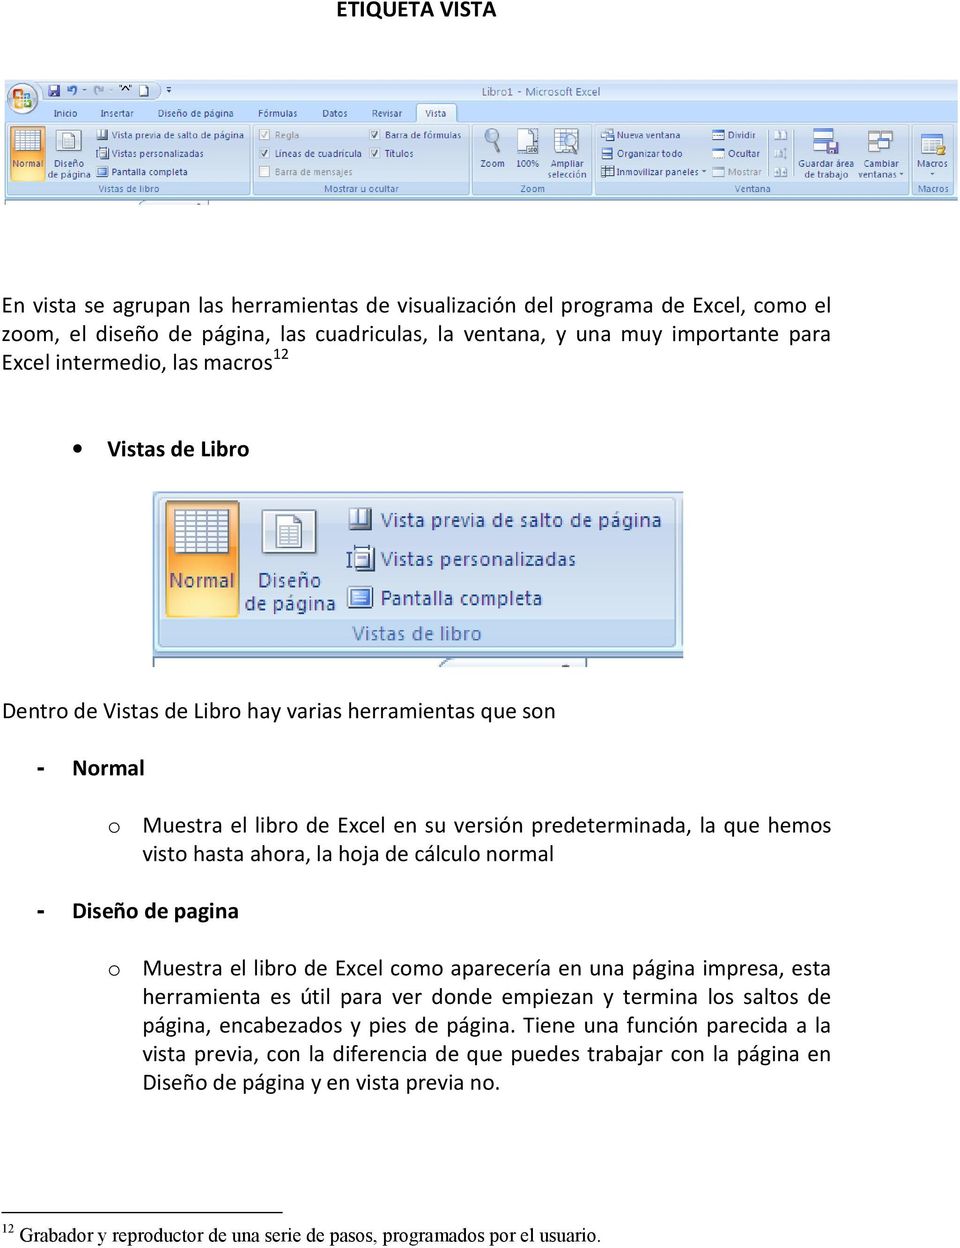 cálculo normal - Diseño de pagina o Muestra el libro de Excel como aparecería en una página impresa, esta herramienta es útil para ver donde empiezan y termina los saltos de página, encabezados y